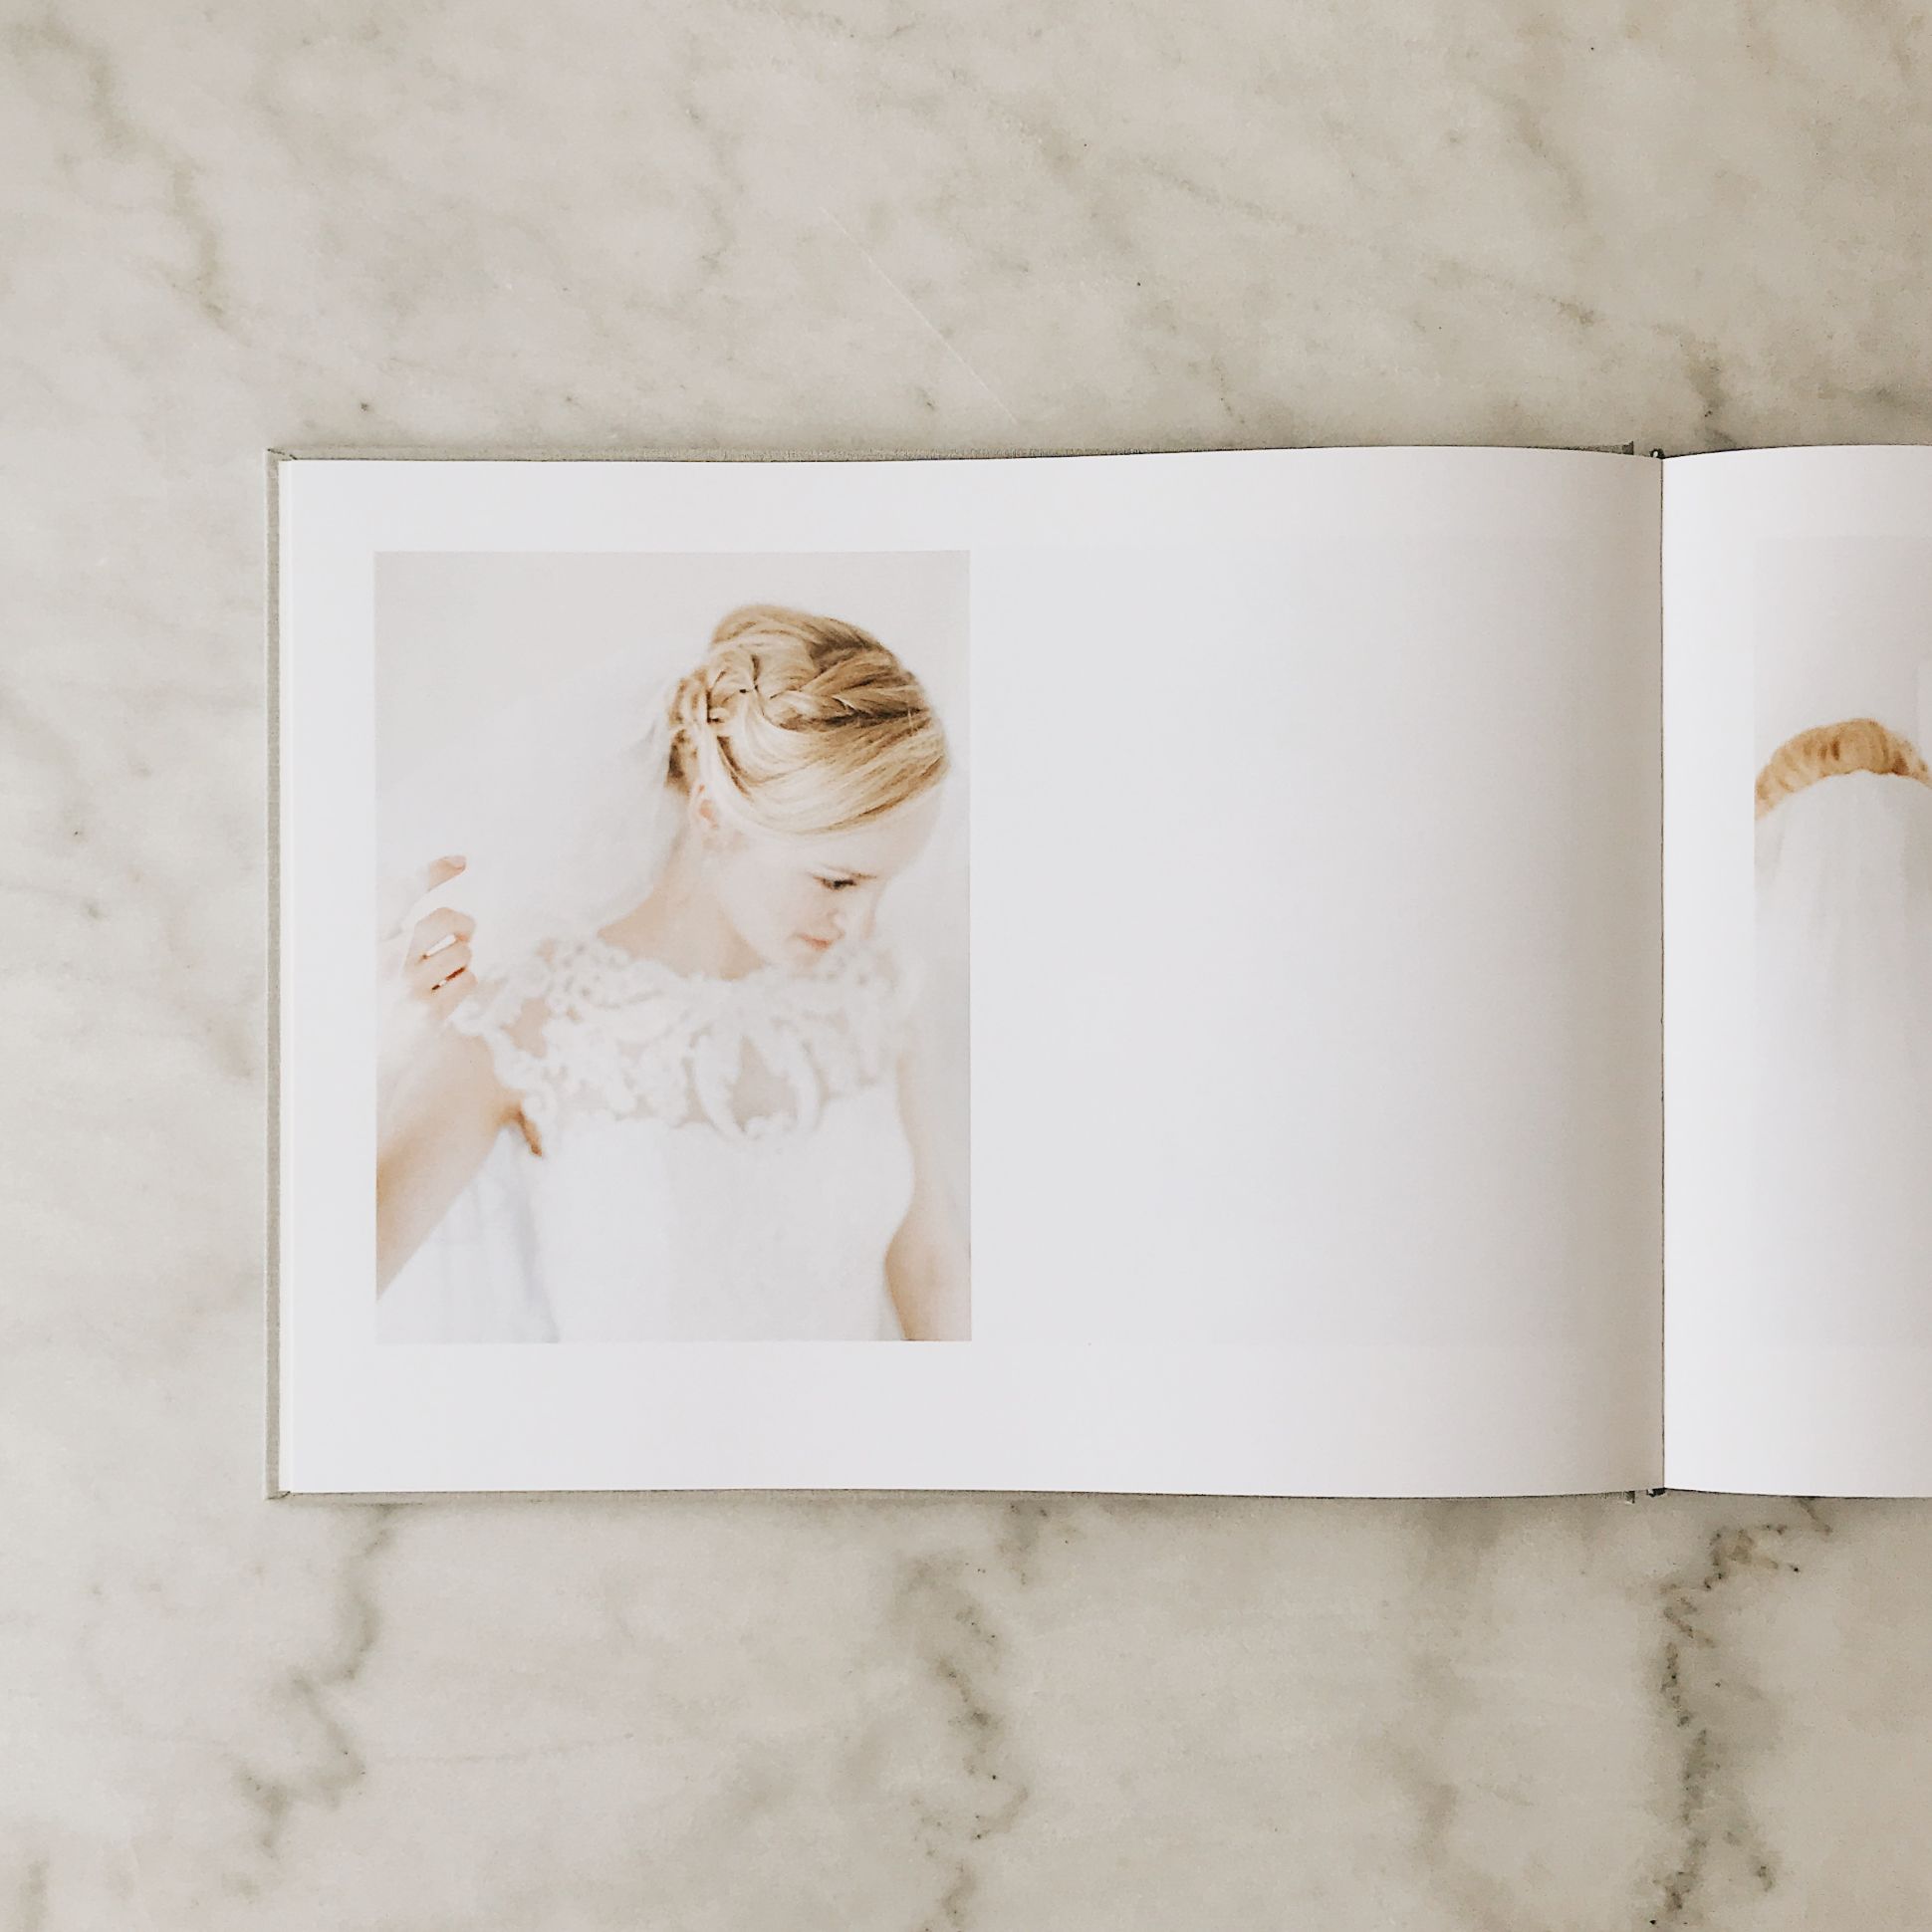 Ouverture du livre de mariage montrant la photo de la mariée.